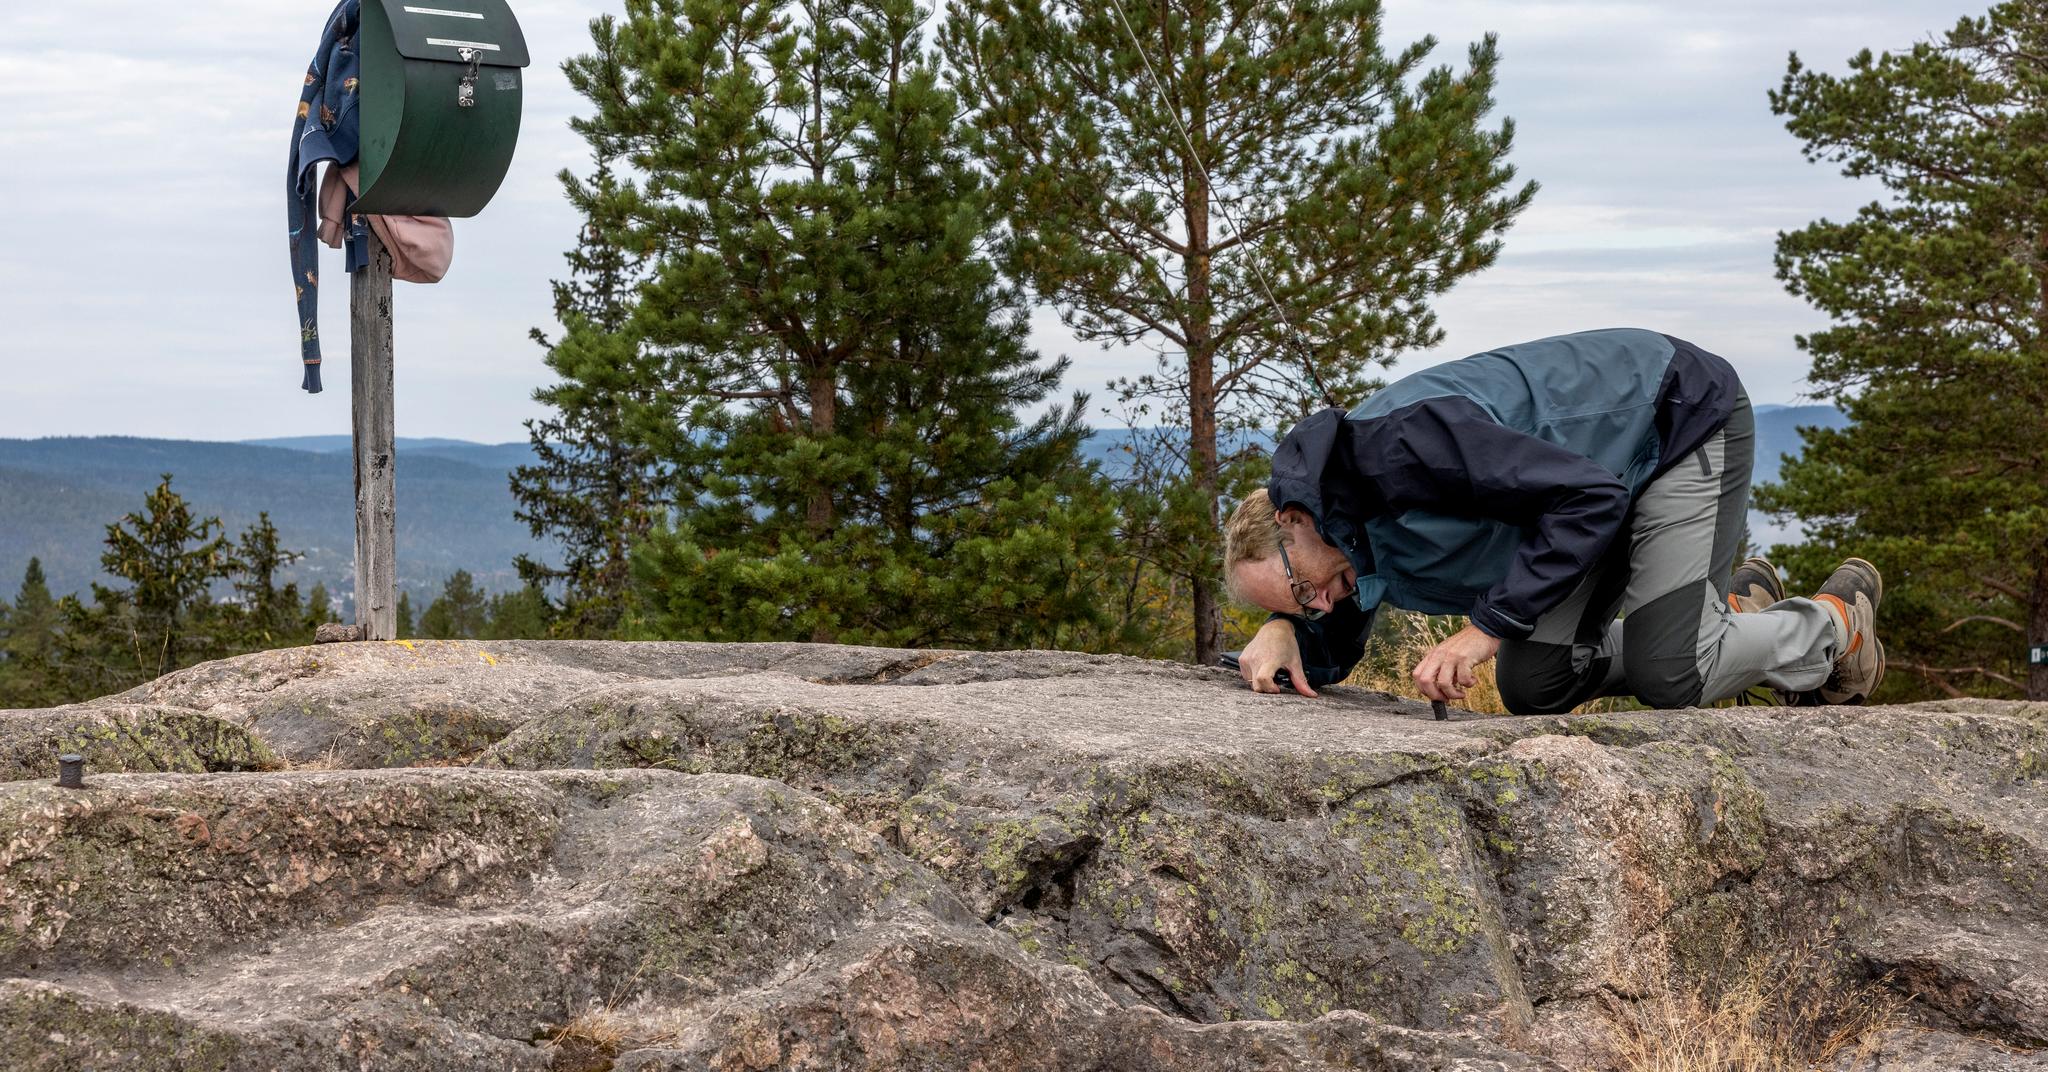 Sveinung Engeland, fjellentusiast og journalist, har tatt frem målebåndet. Ifølge skiltet er Kolsås-toppen 379 moh, men ifølge siste måling befinner toppunktet seg  380 moh.